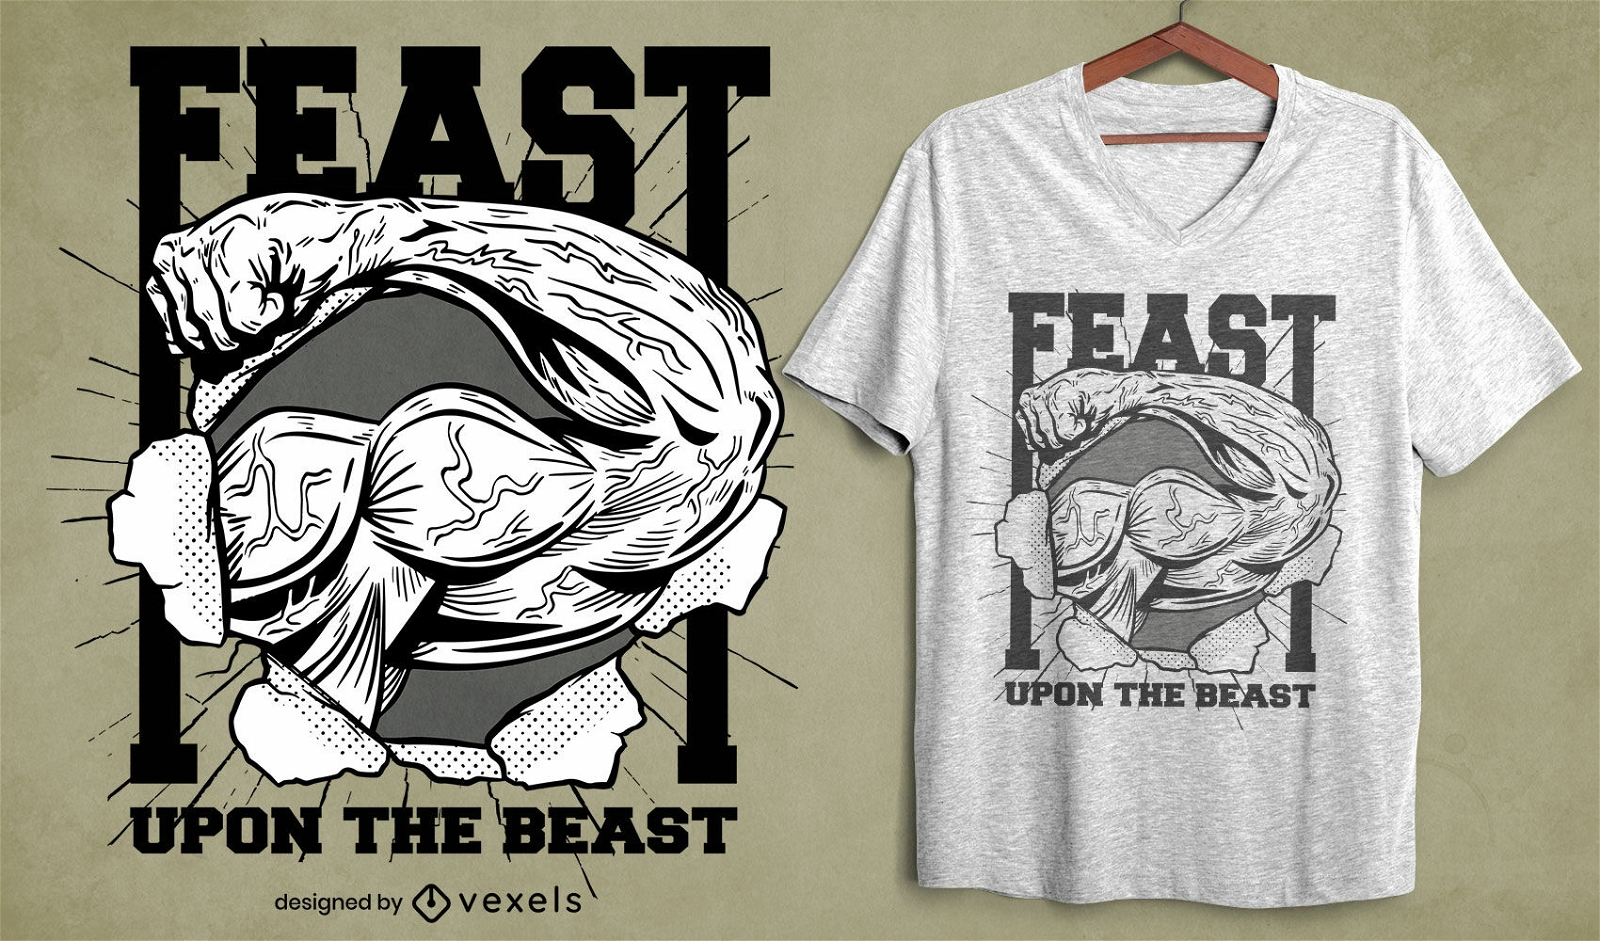 Design de t-shirt de treino Feast